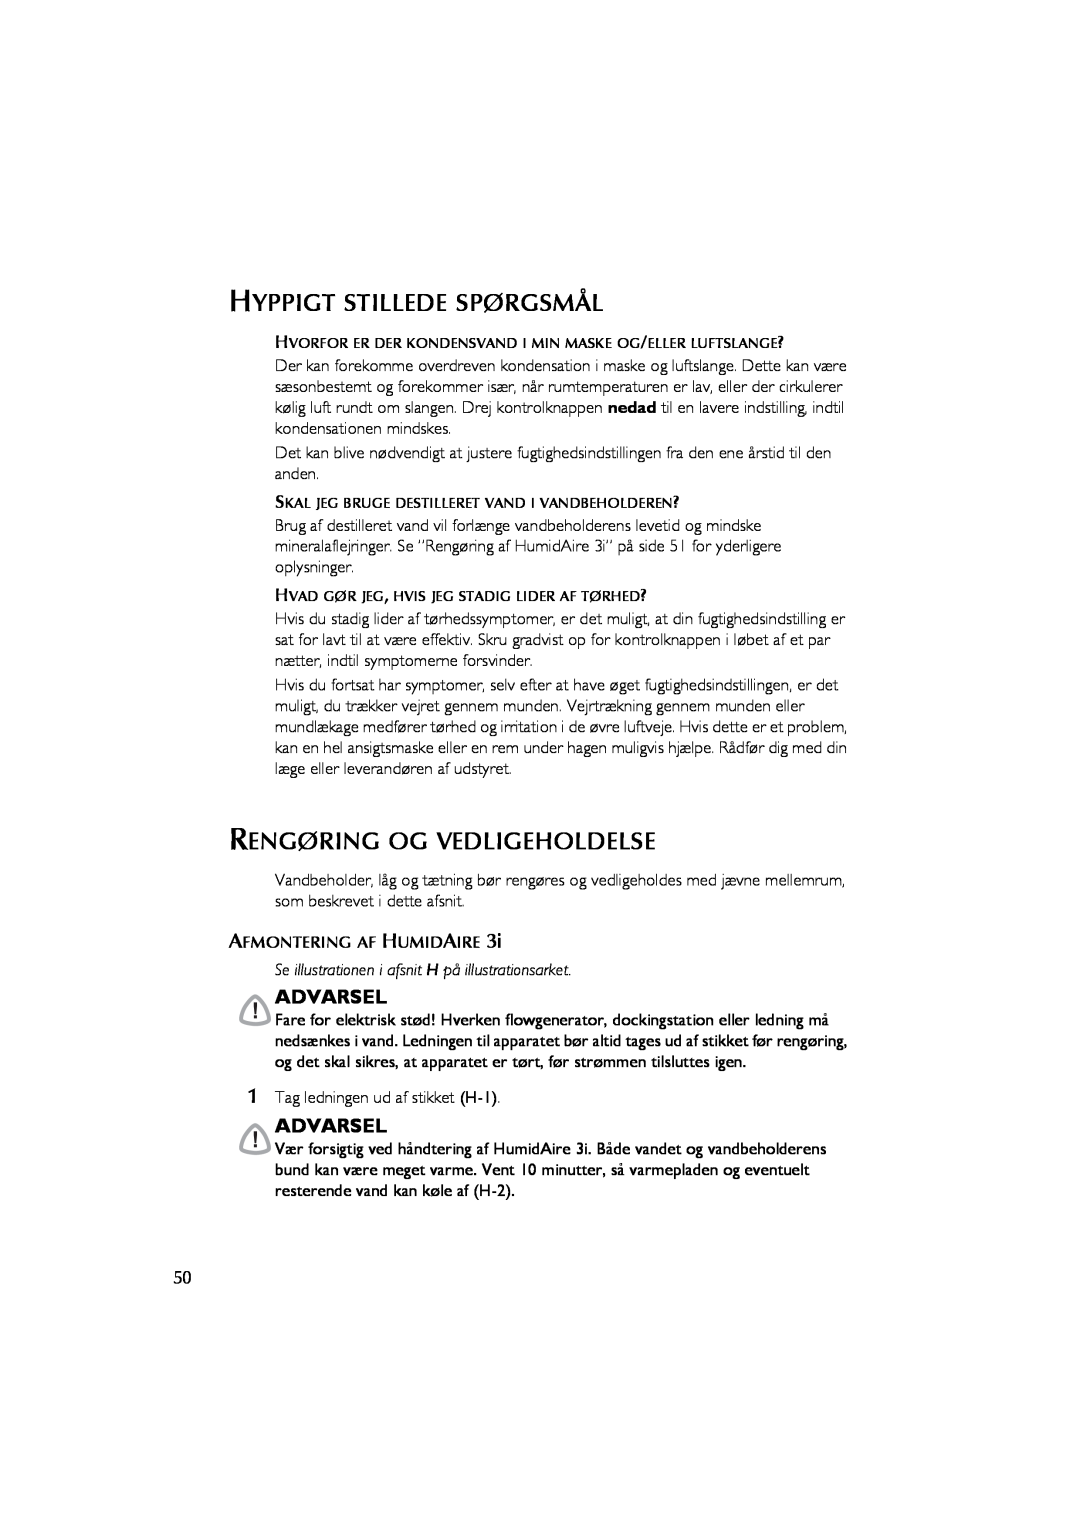 ResMed Humidifier user manual Hyppigt Stillede Spørgsmål, Rengøring Og Vedligeholdelse, Advarsel 